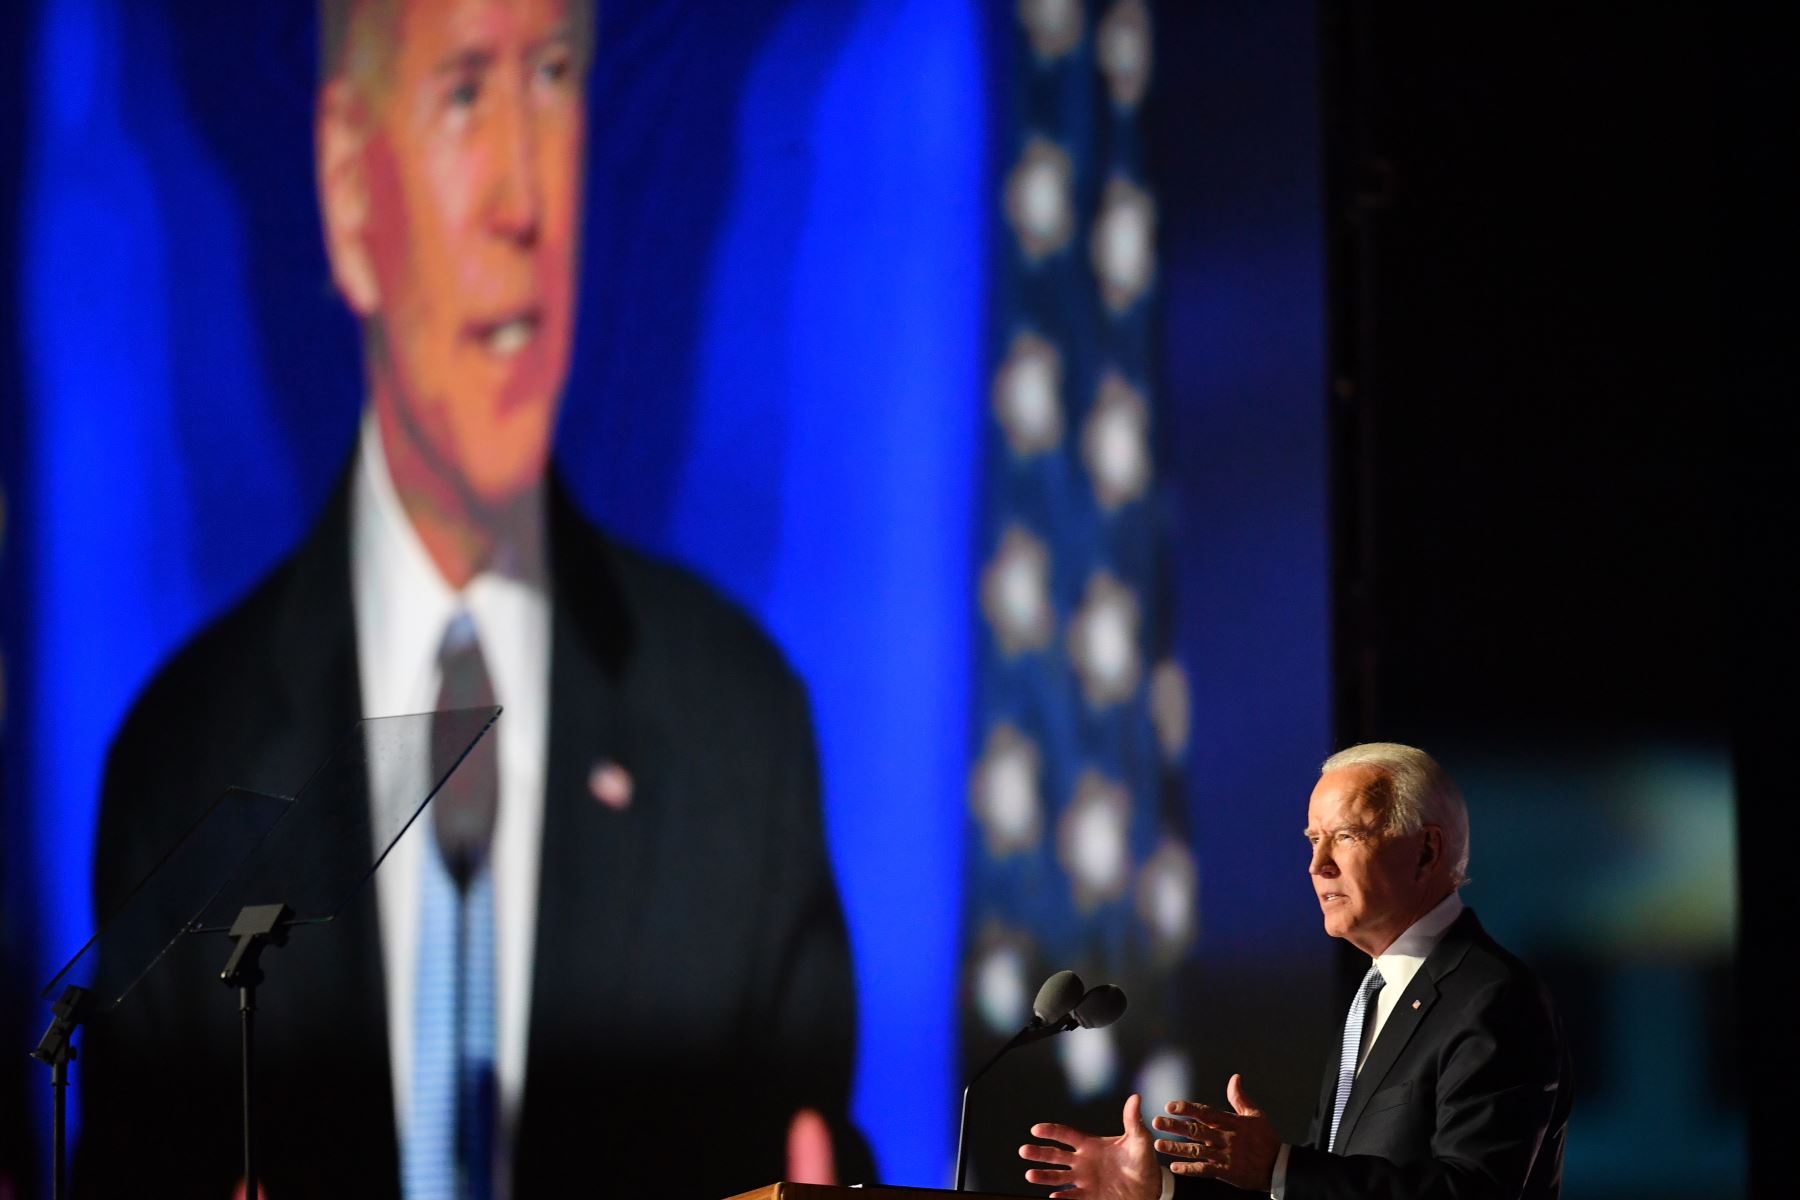 El presidente electo de los Estados Unidos, Joe Biden, pronuncia un discurso en Wilmington, Delaware, luego de ser declarado ganador de las elecciones presidenciales.
Foto: AFP